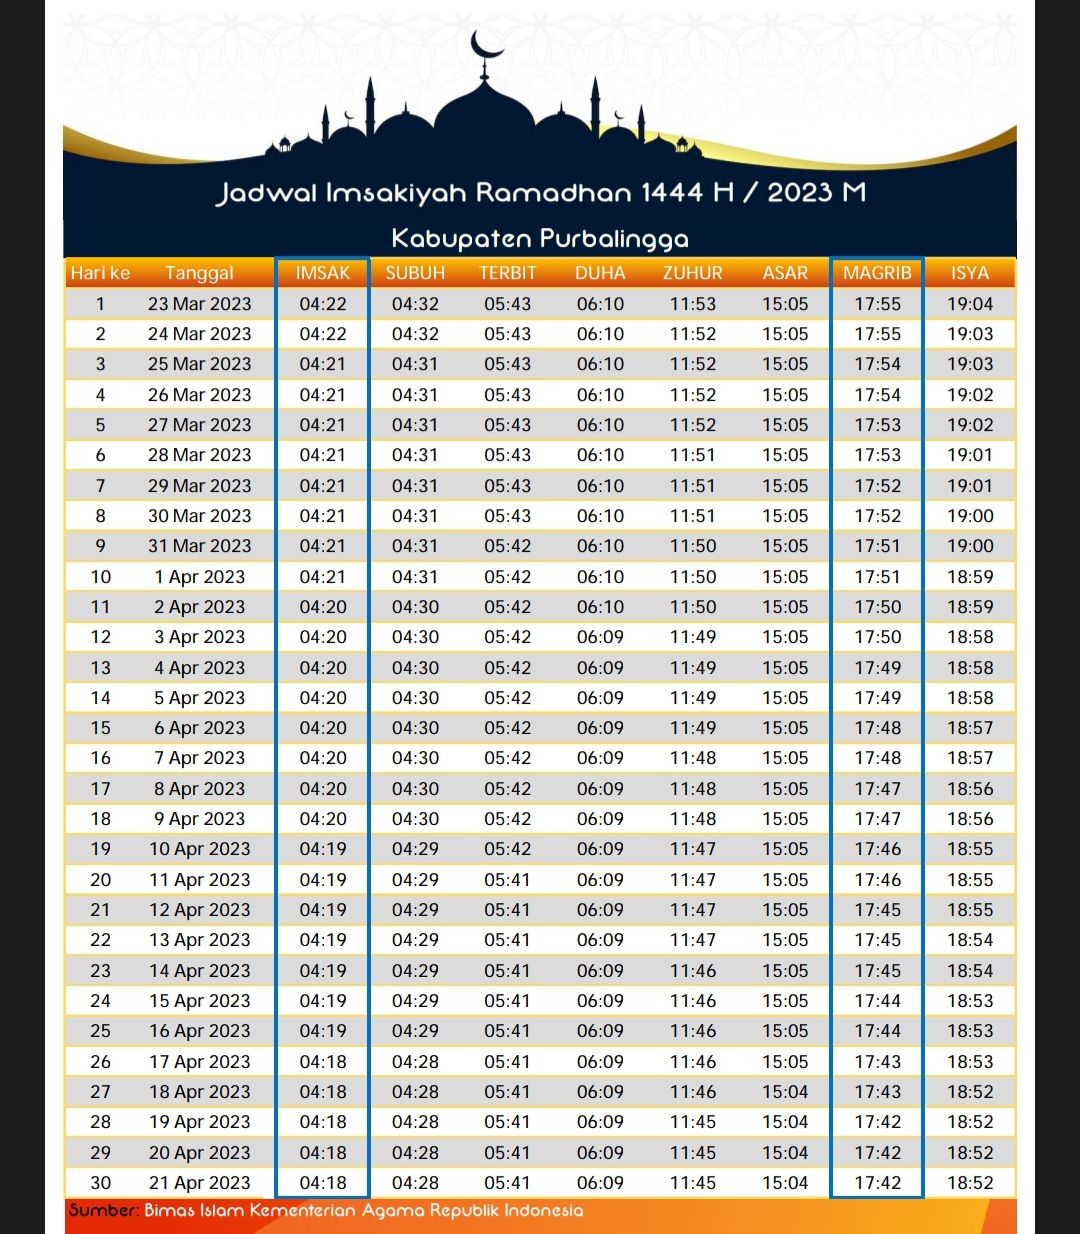 Jadwal buka puasa 2023 dan jadwal imsak Ramadhan 2023 Purbalingga.*